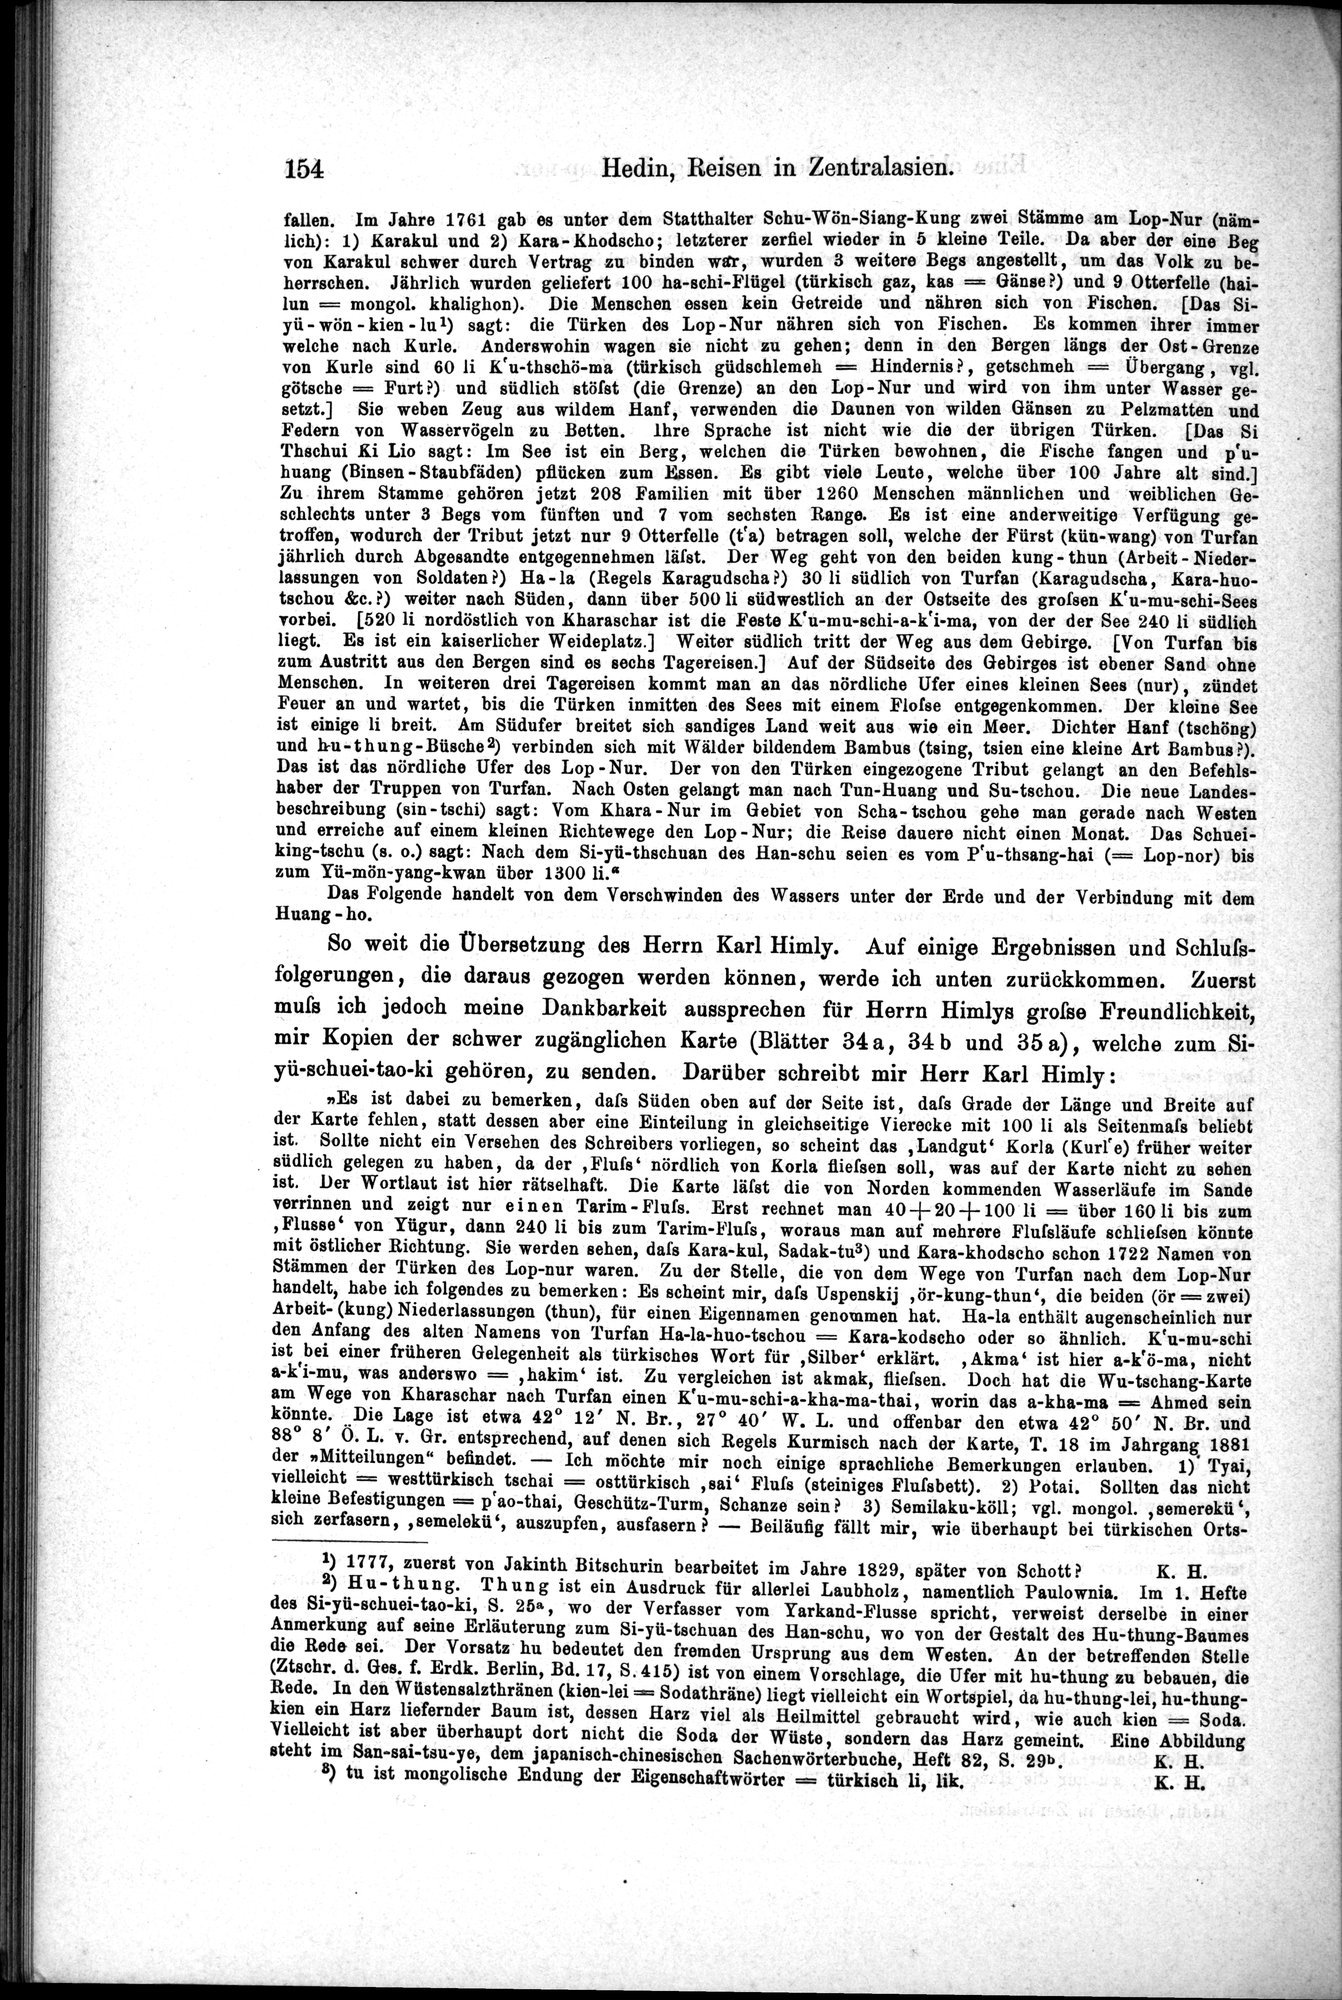 Die Geographische-Wissenschaftlichen Ergebnisse meiner Reisen in Zentralasien, 1894-1897 : vol.1 / Page 166 (Grayscale High Resolution Image)